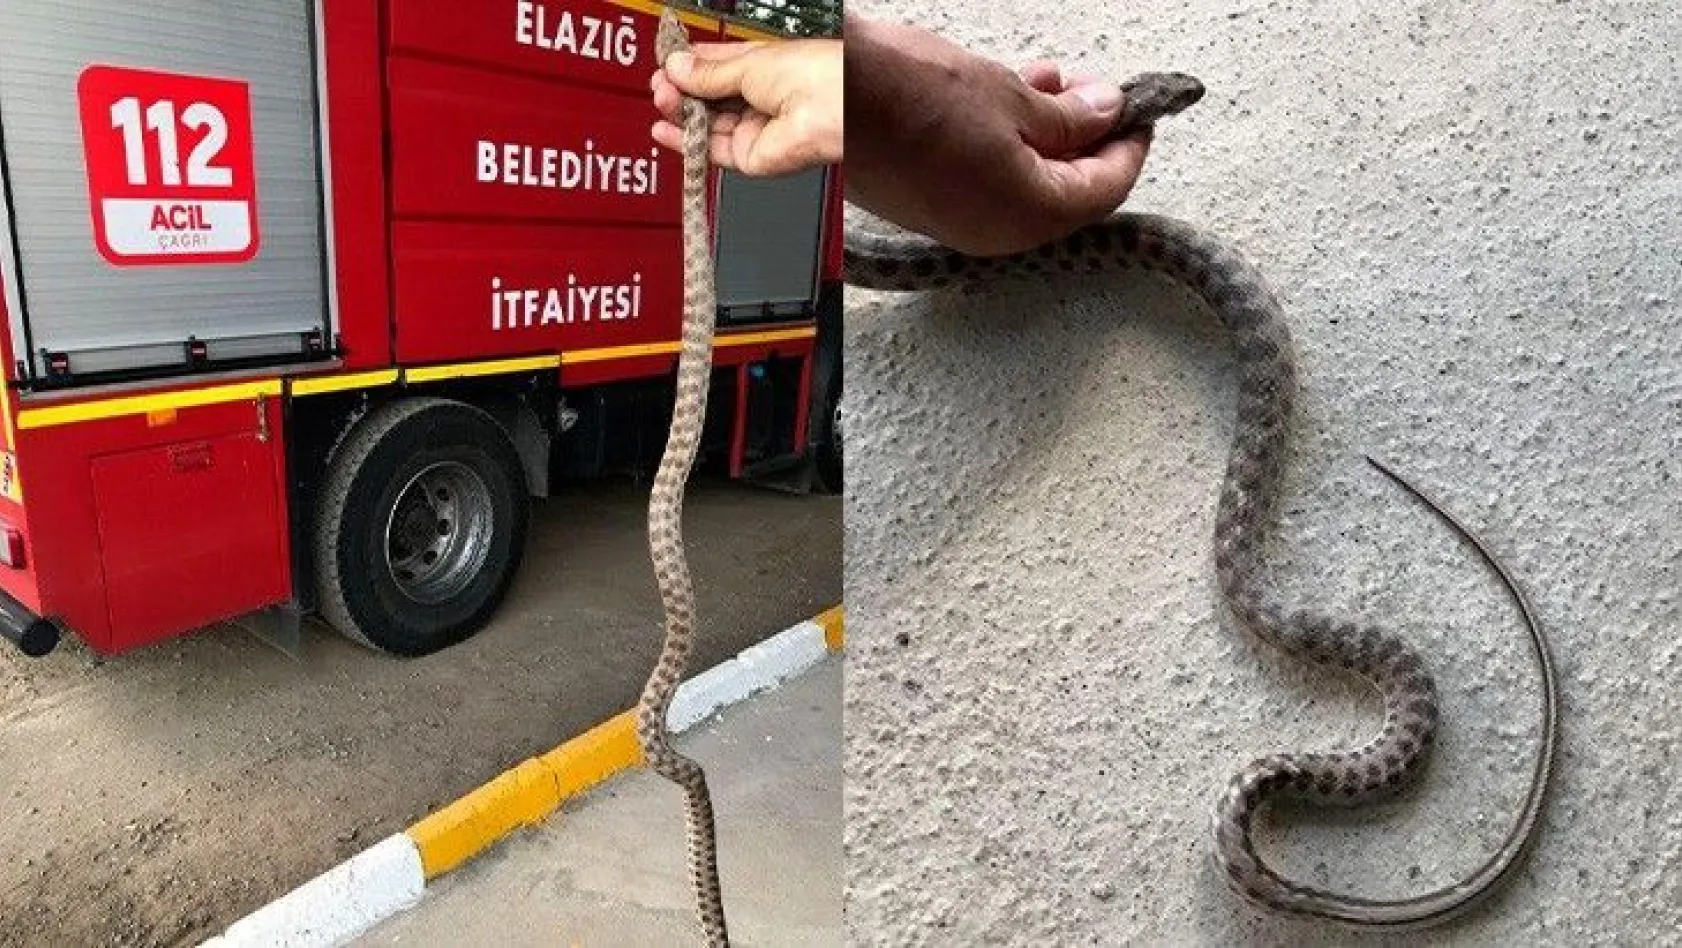 Elazığ'da yılanlar ortaya çıkmaya başladı